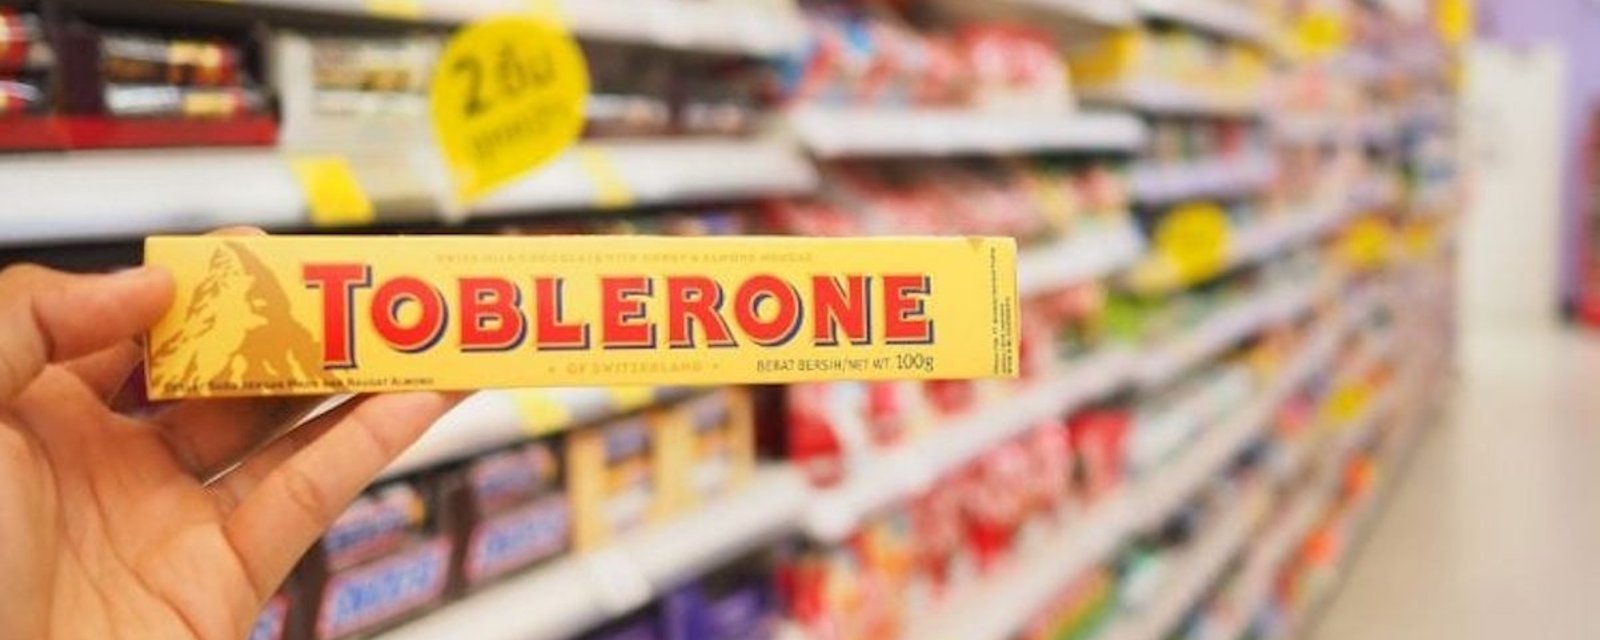 Un garçon de 10 ans aurait remarqué ce que personne n’aurait vu avant sur l’emballage du chocolat Toblerone